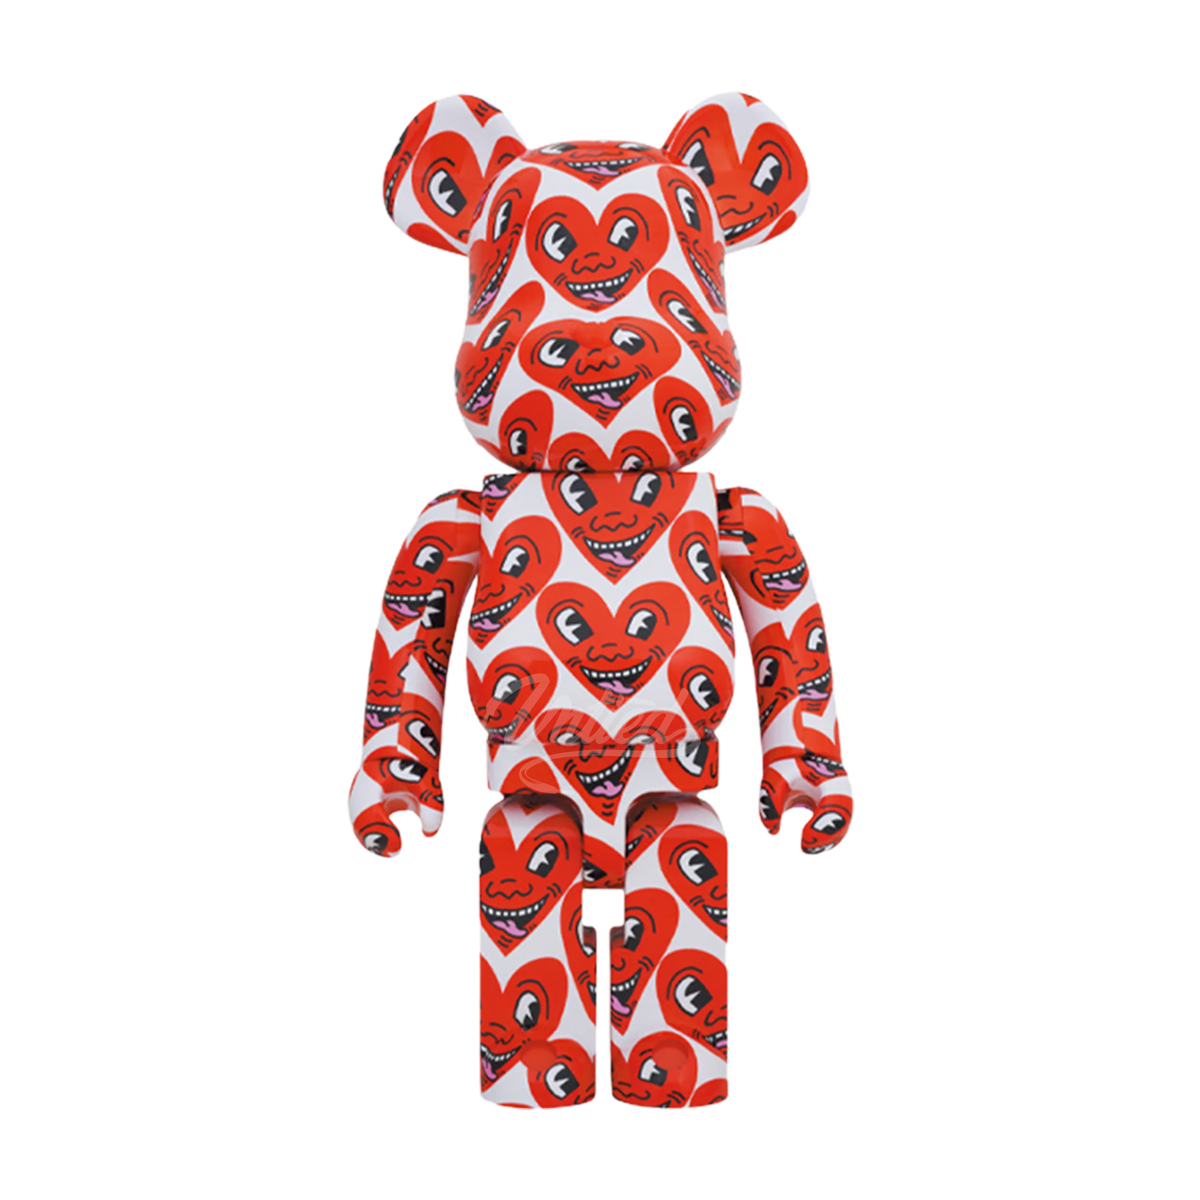 Bearbrick Keith Haring #6 "Hearts" 1000%